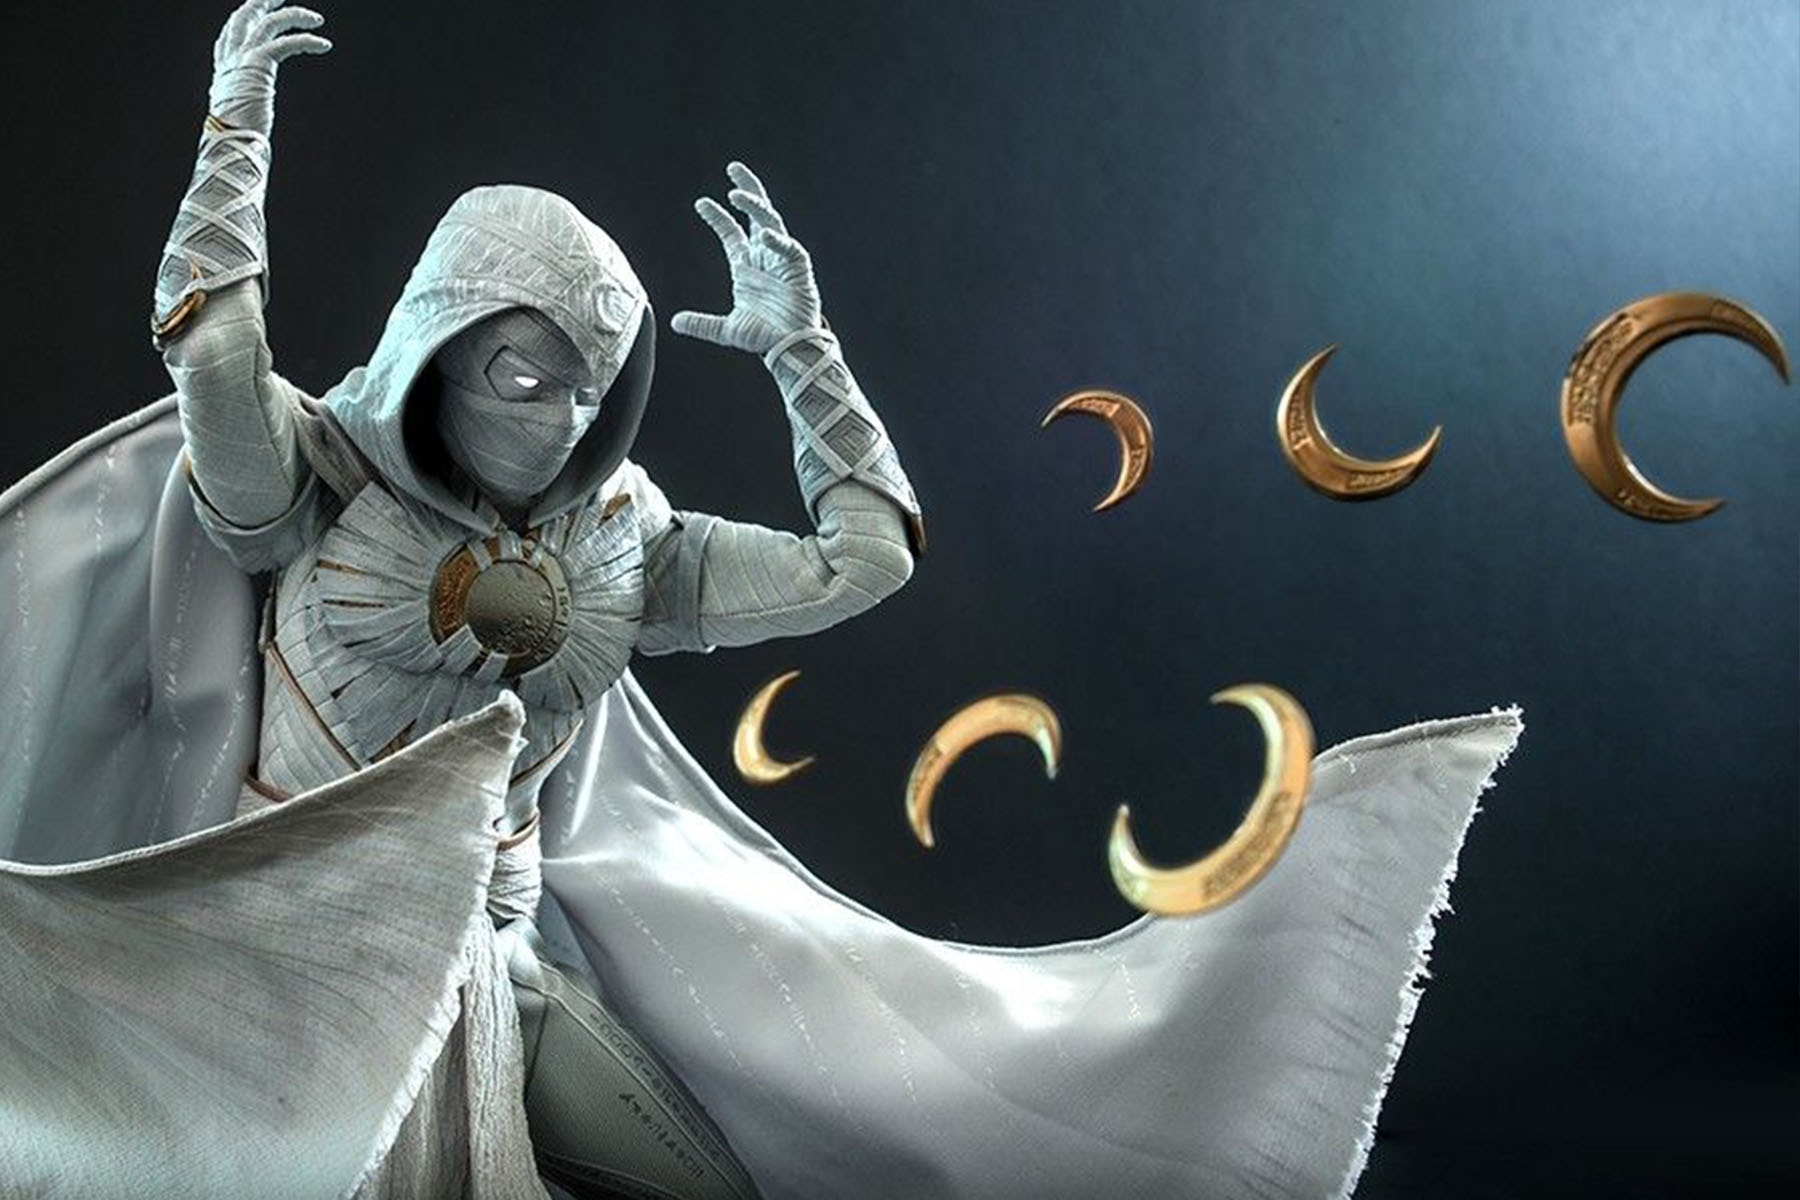 Hot Toys《Moon Knight 月光騎士》1:6 比例雕塑模型正式發佈